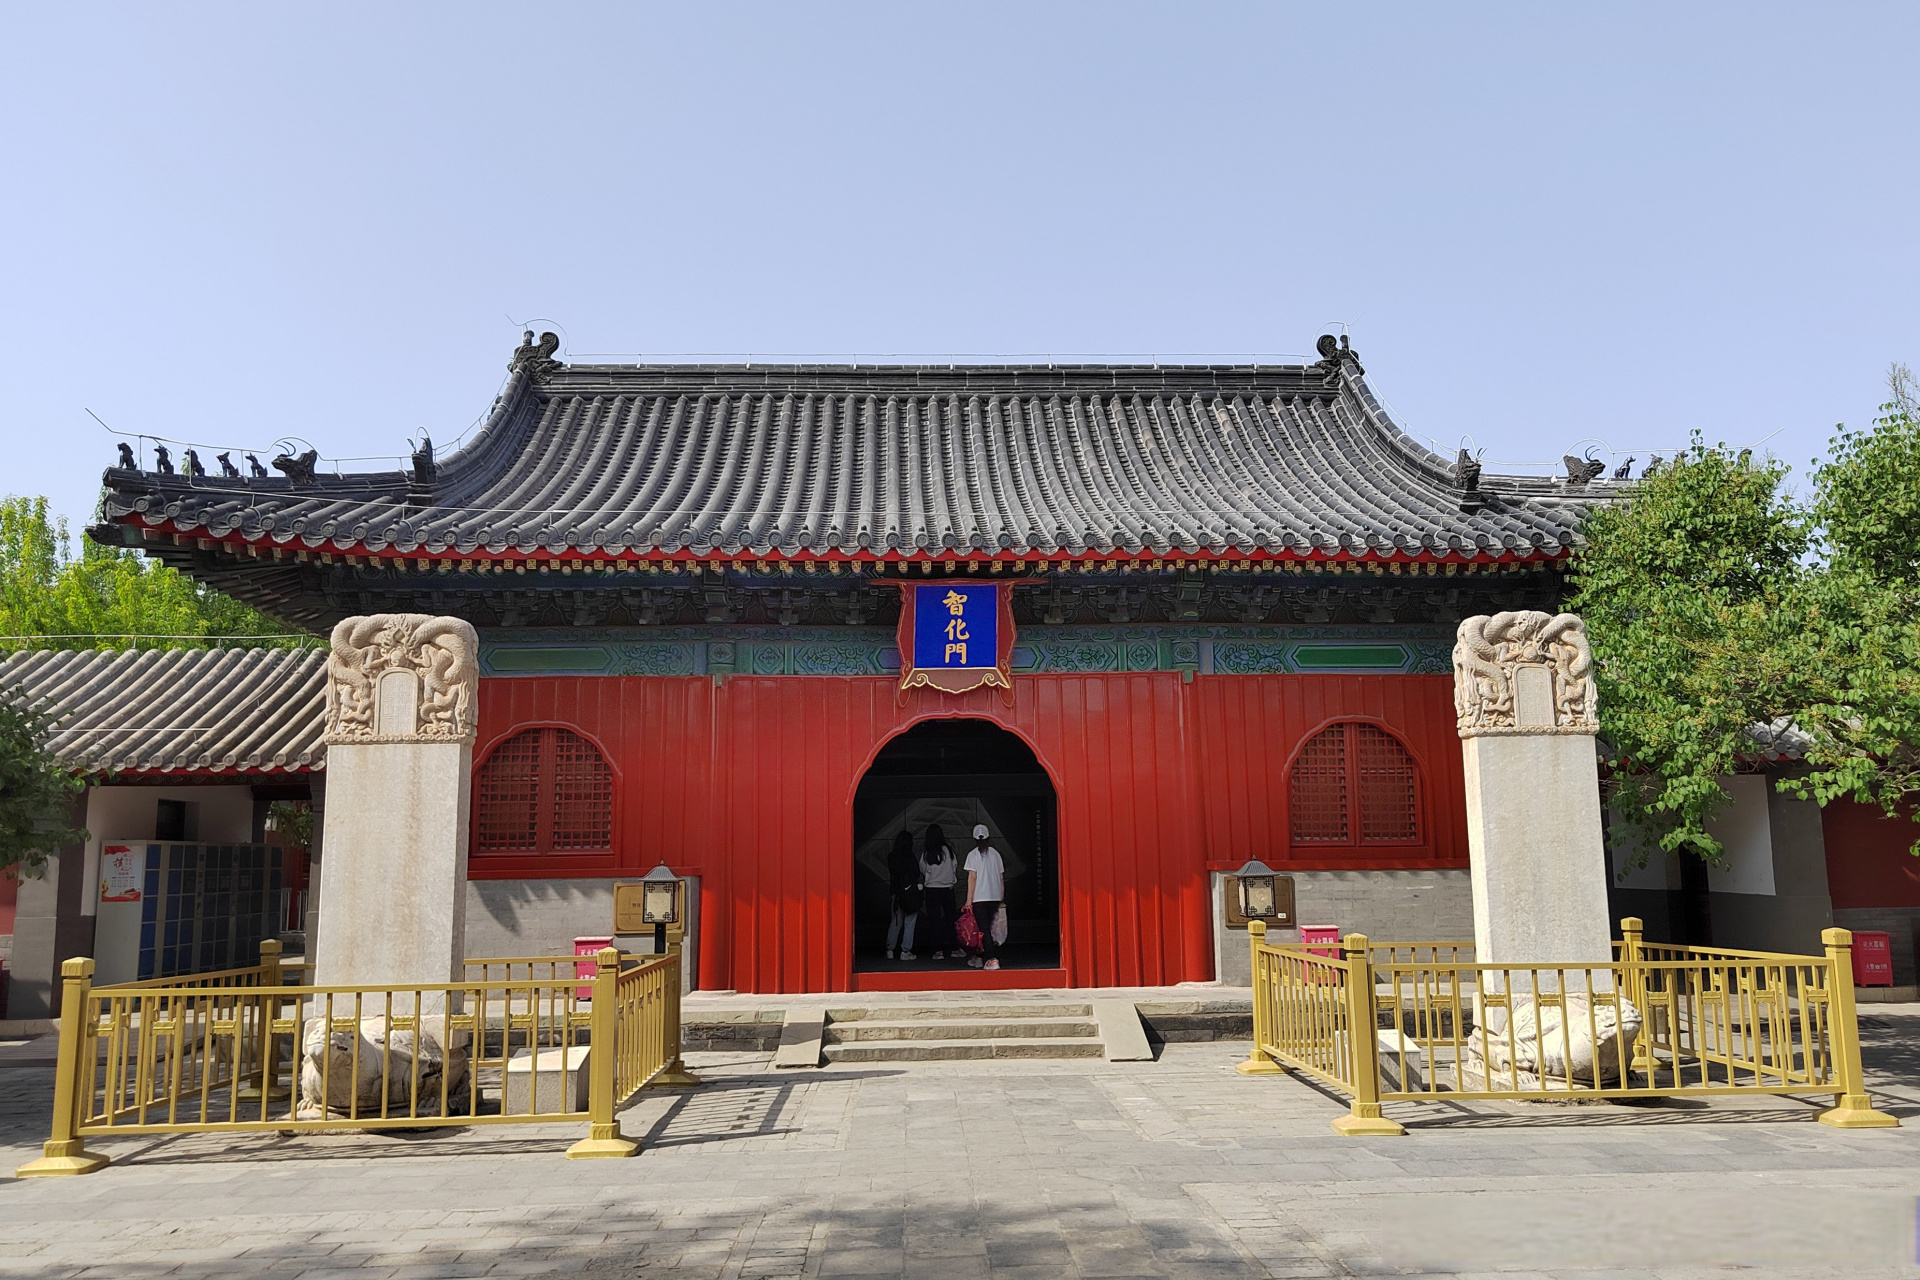 北京市东城区禄米仓胡同内,有一座修建于明朝正统八年(1443)的智化寺